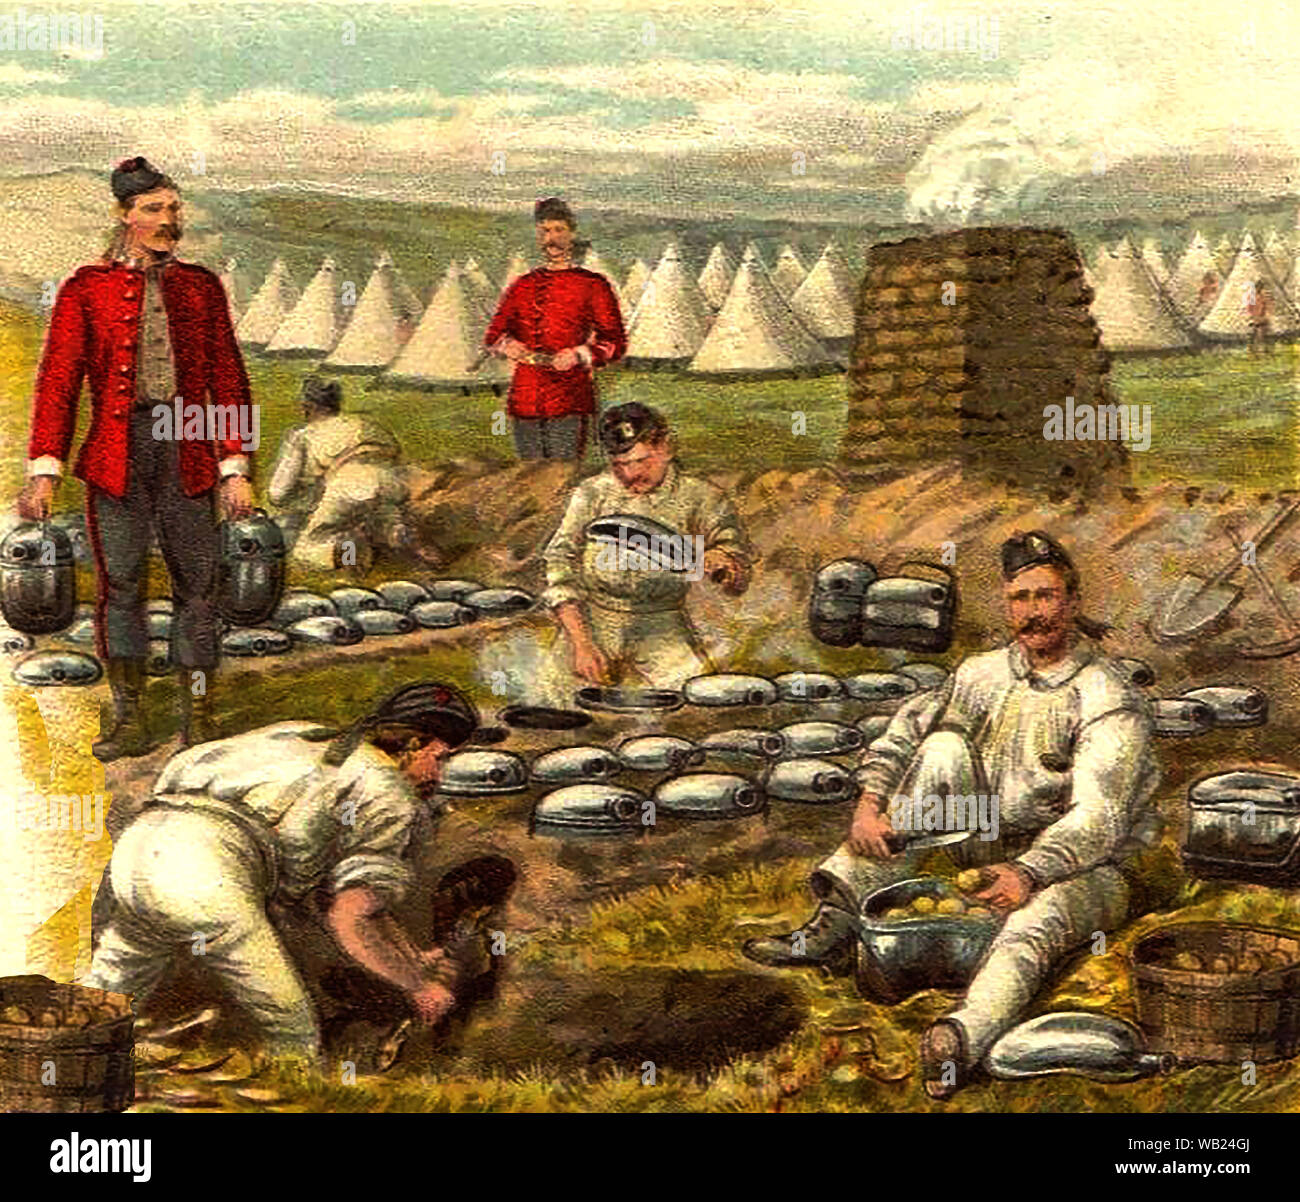 Inizio immagine della cartolina (circa 1900) che mostra la cucina di un reggimento britannico indossa giacche rosse e stile Glengarry dei cappucci. Tende e un costruito in mattoni forno di camp può essere visto in background. Foto Stock